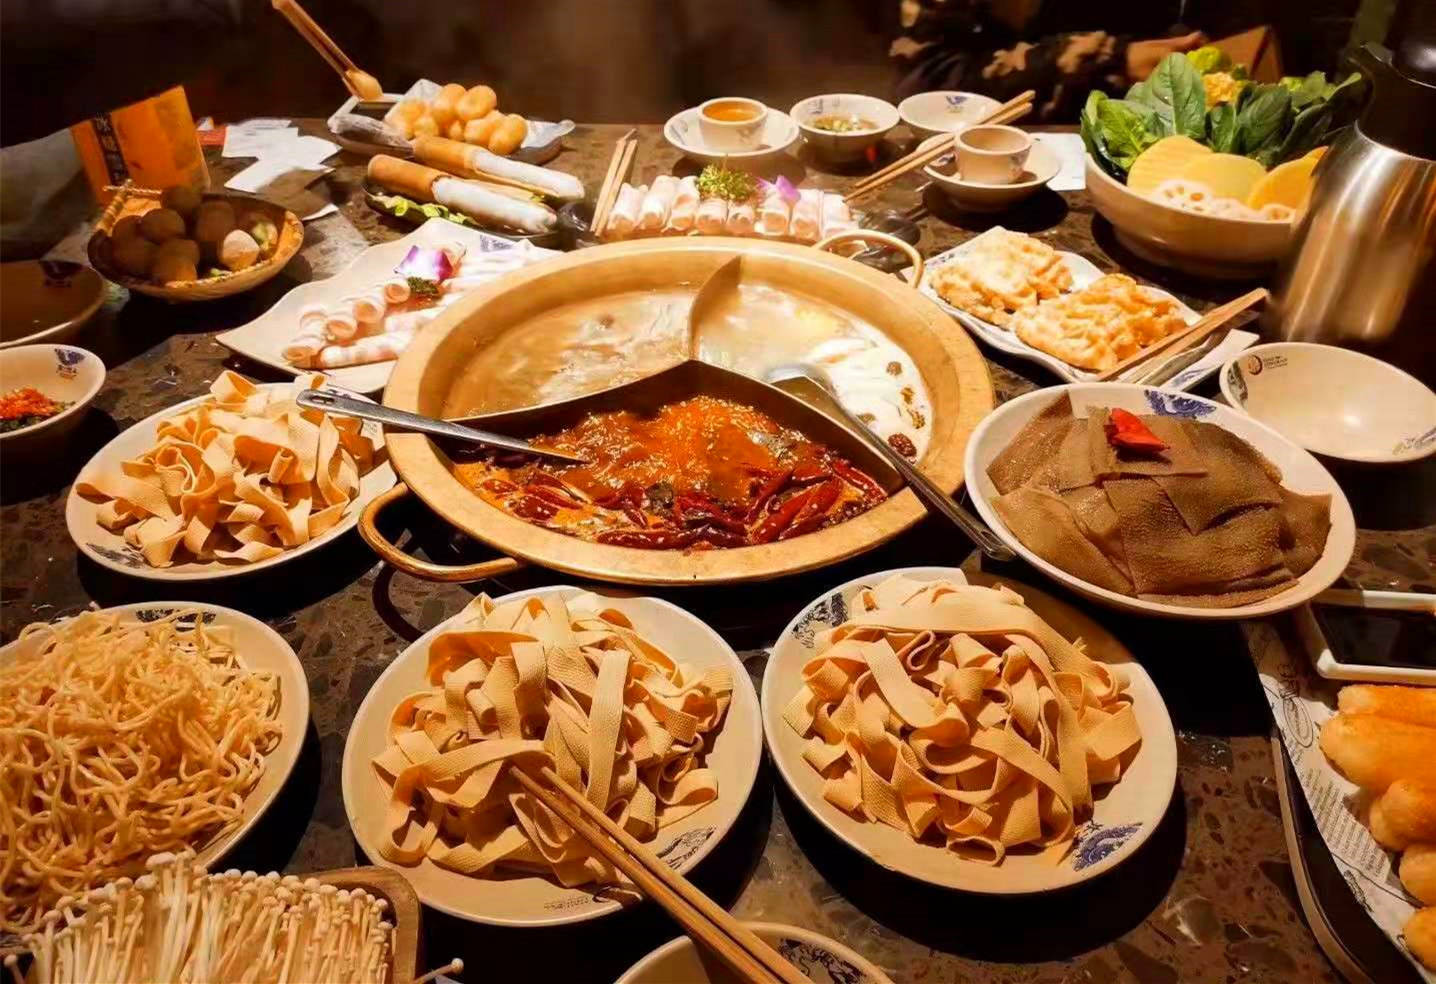 火锅最近火了,晒朋友圈6桌火锅宴,能认全第5桌的人绝对是吃货!